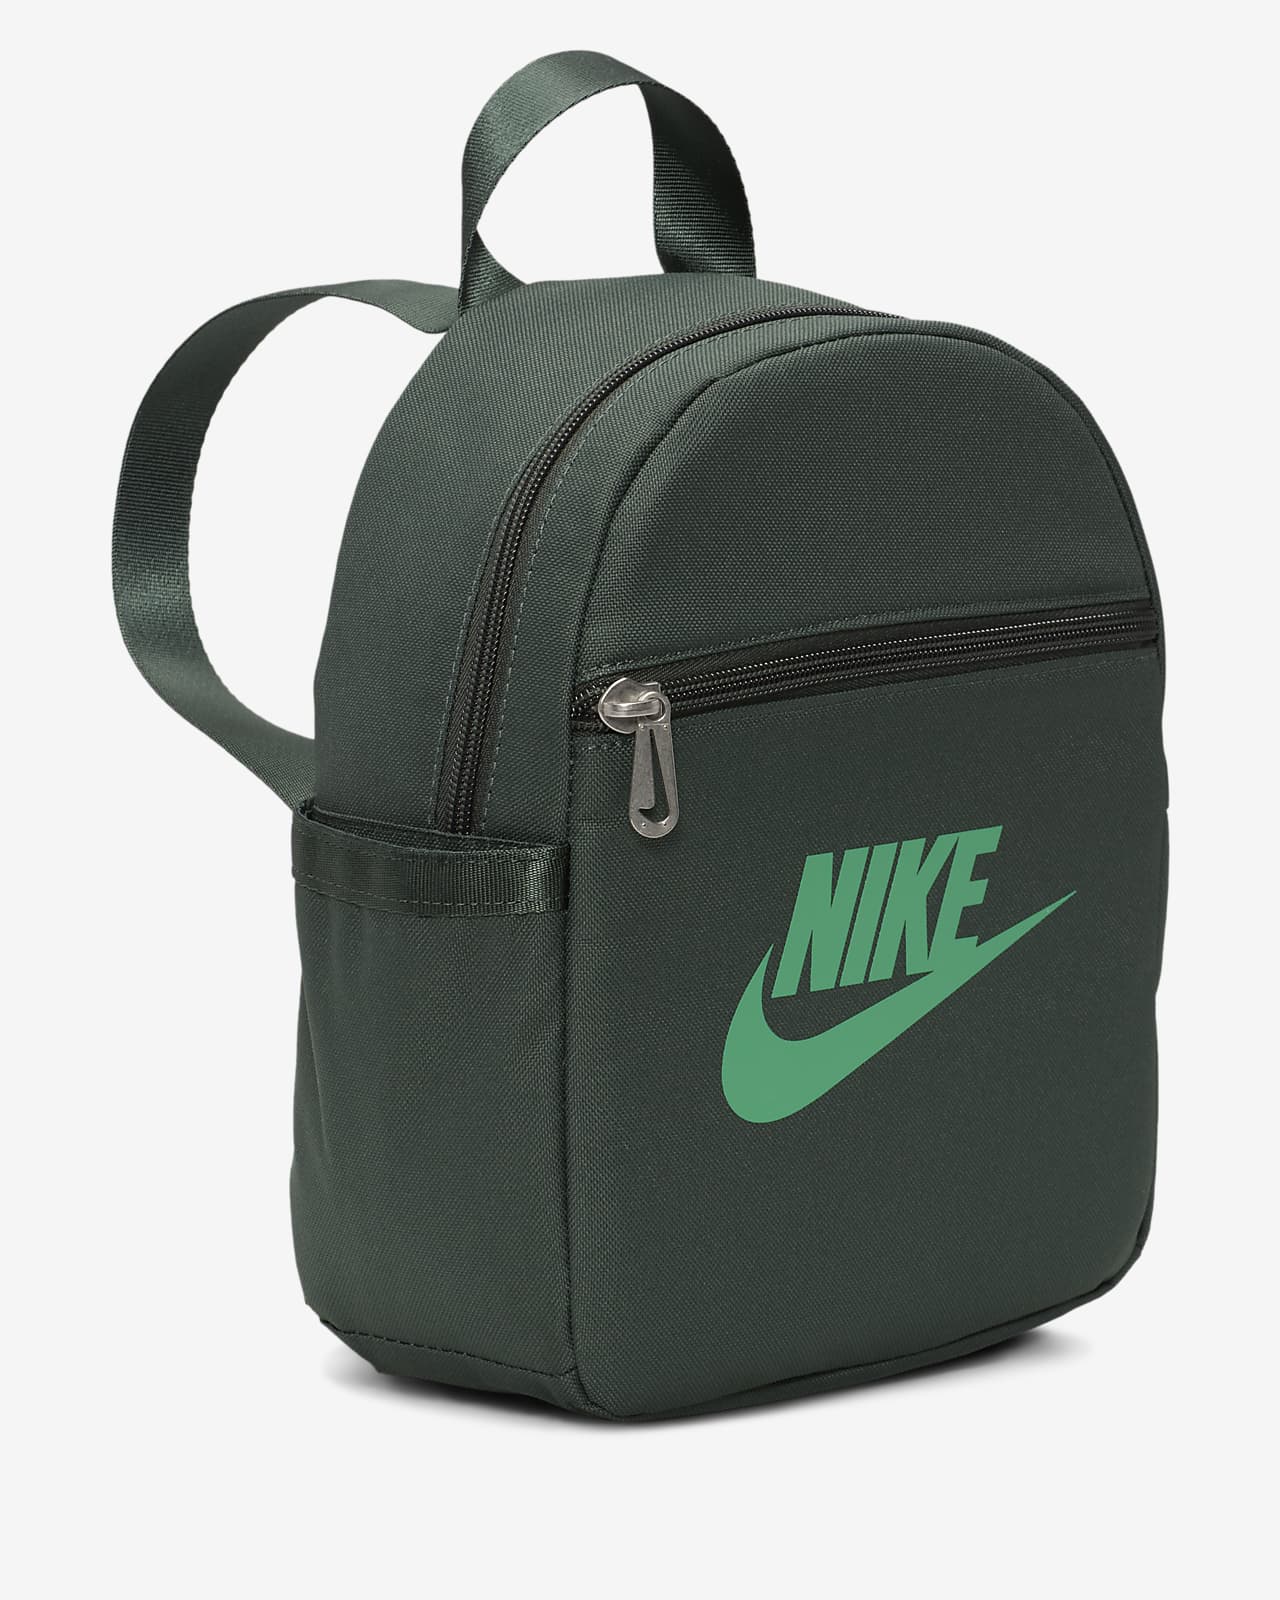 Nike Sportswear Futura 365 Bag